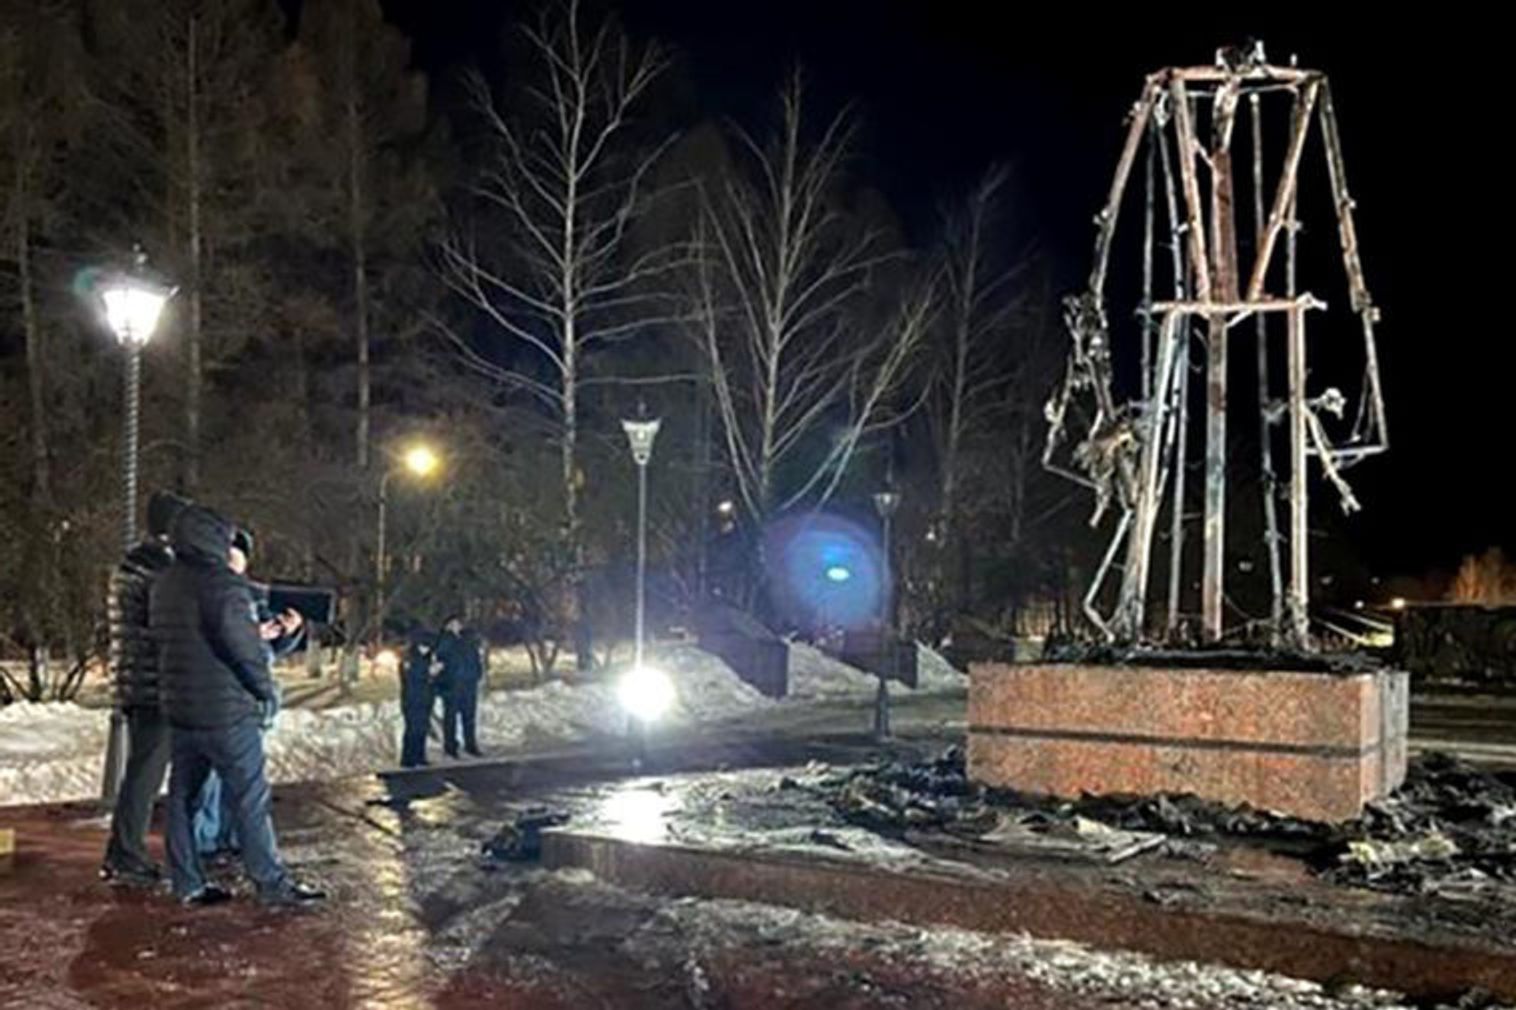 У Татарстані згорів пам'ятник Воїну-визволителю ВВВ, виготовлений з «вогнетривкого матеріалу». Він простояв менше року